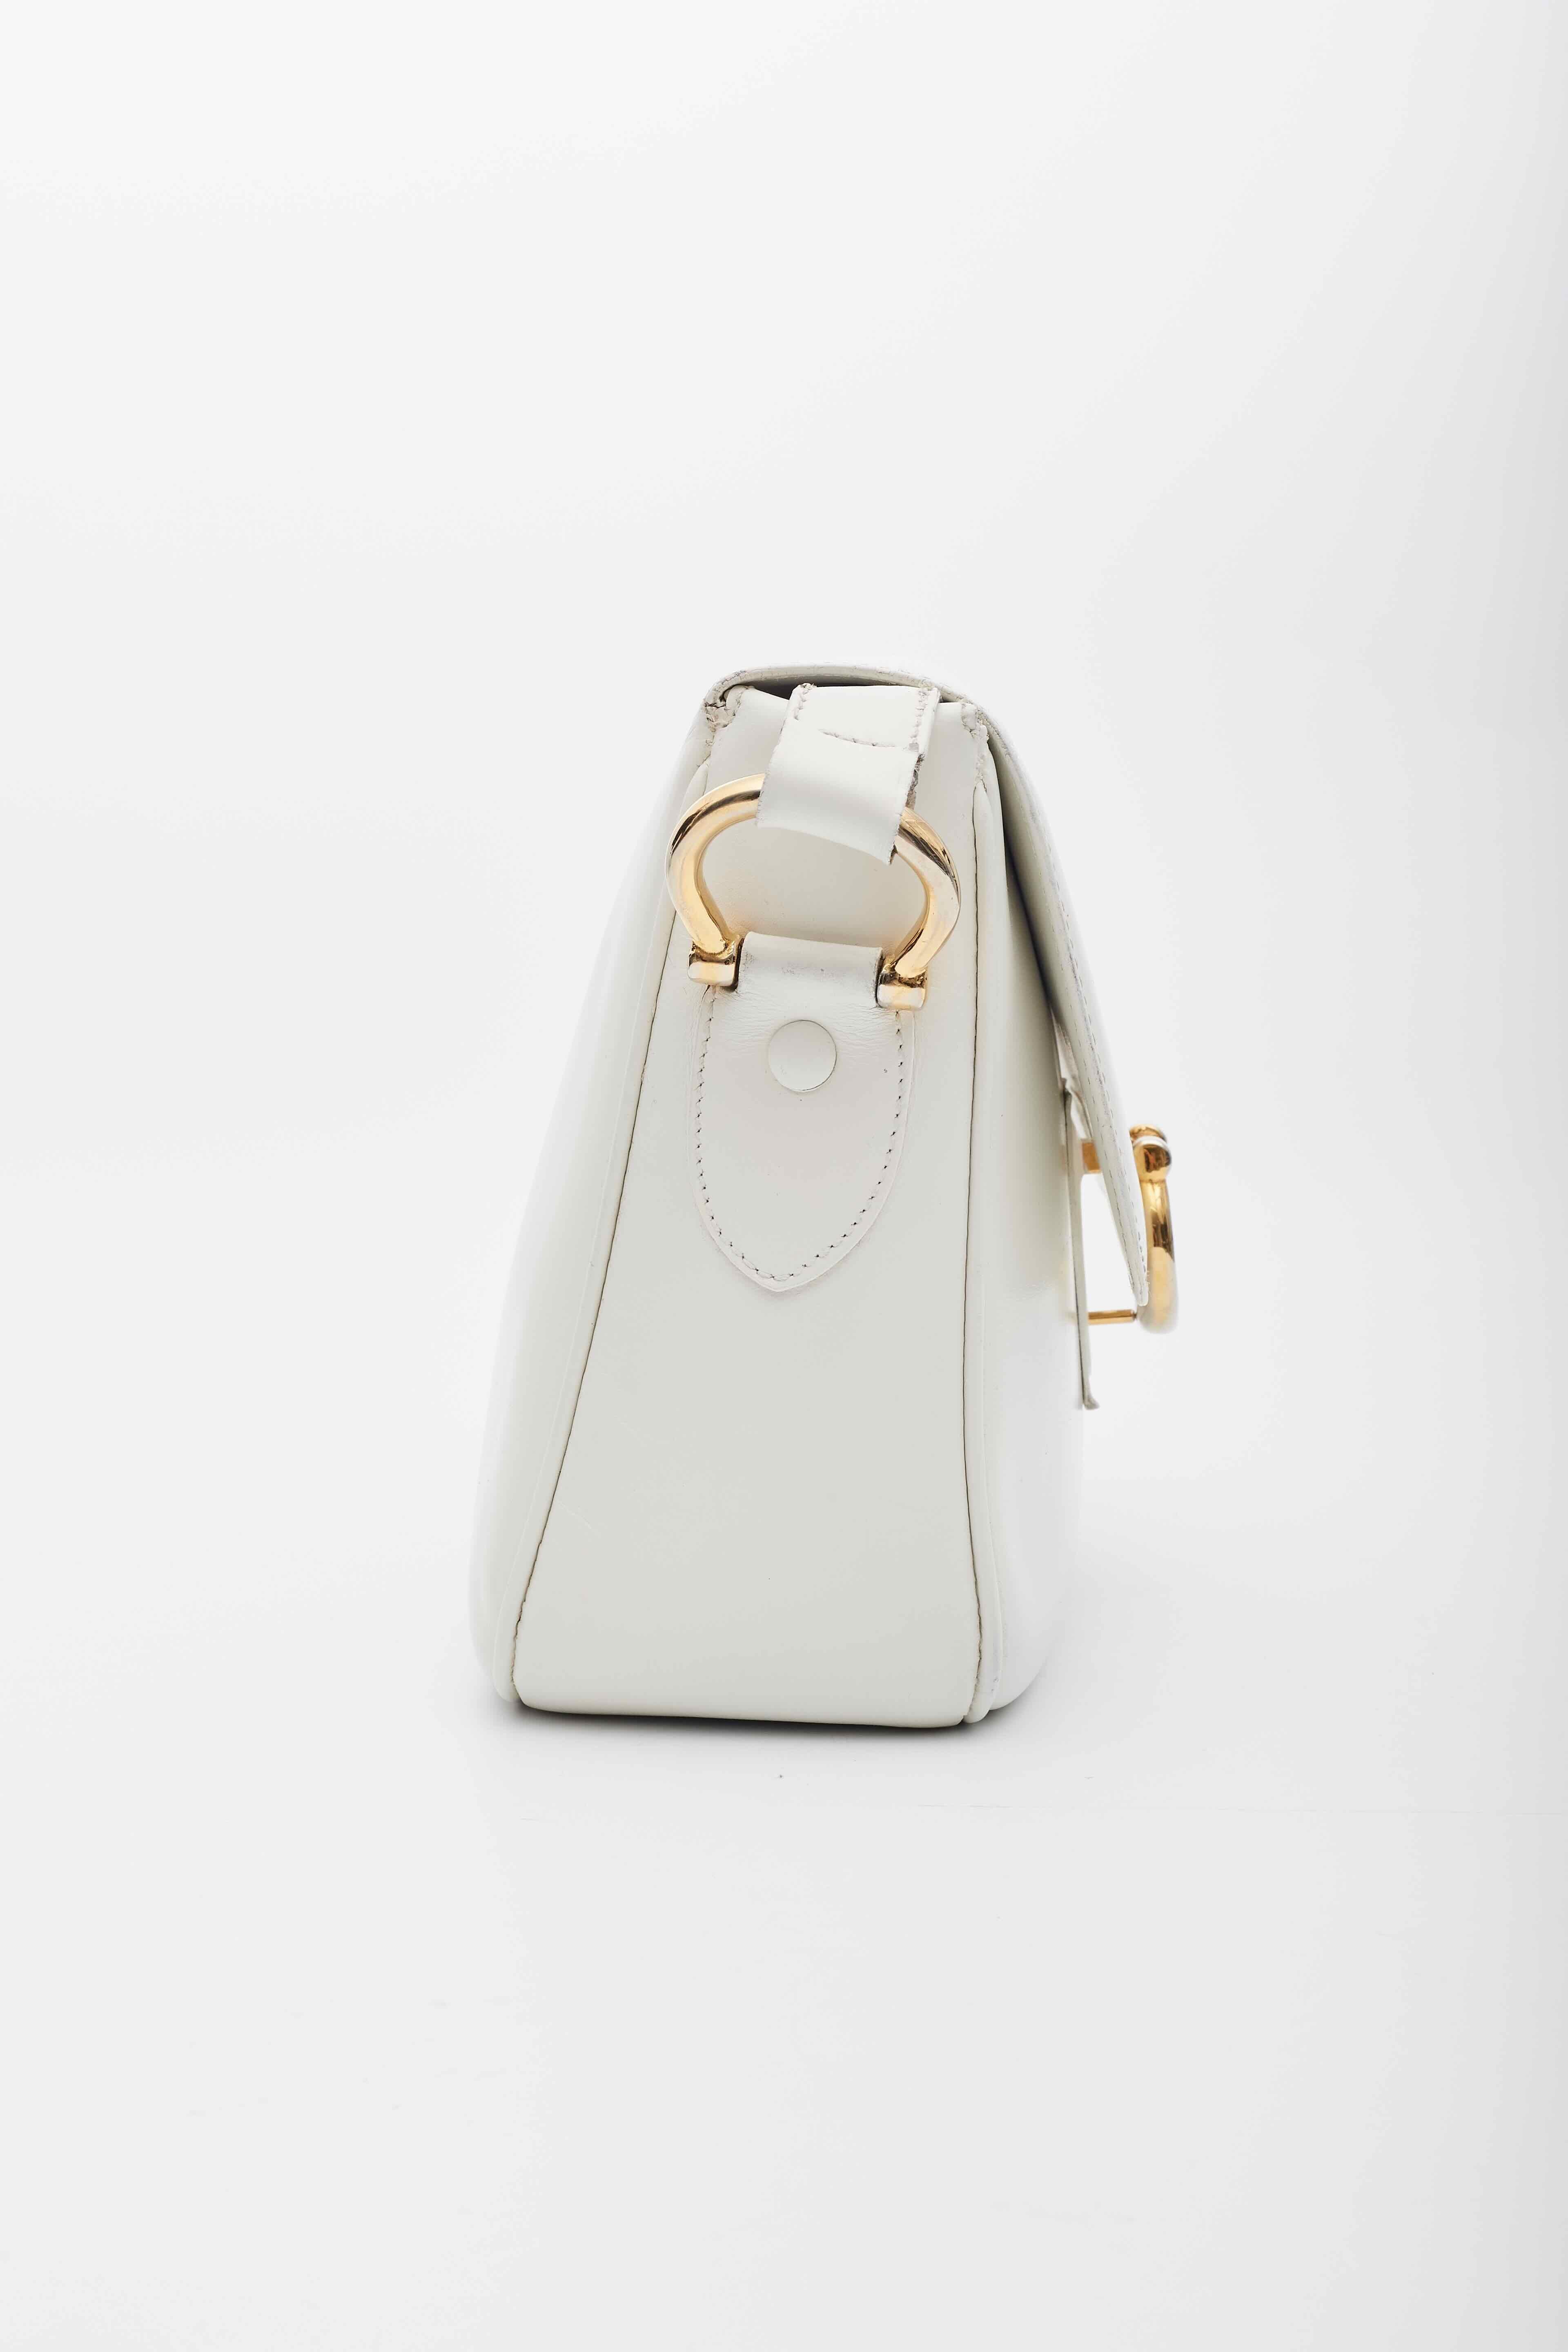 Women's Celine Vintage White Leather Shoulder Bag For Sale